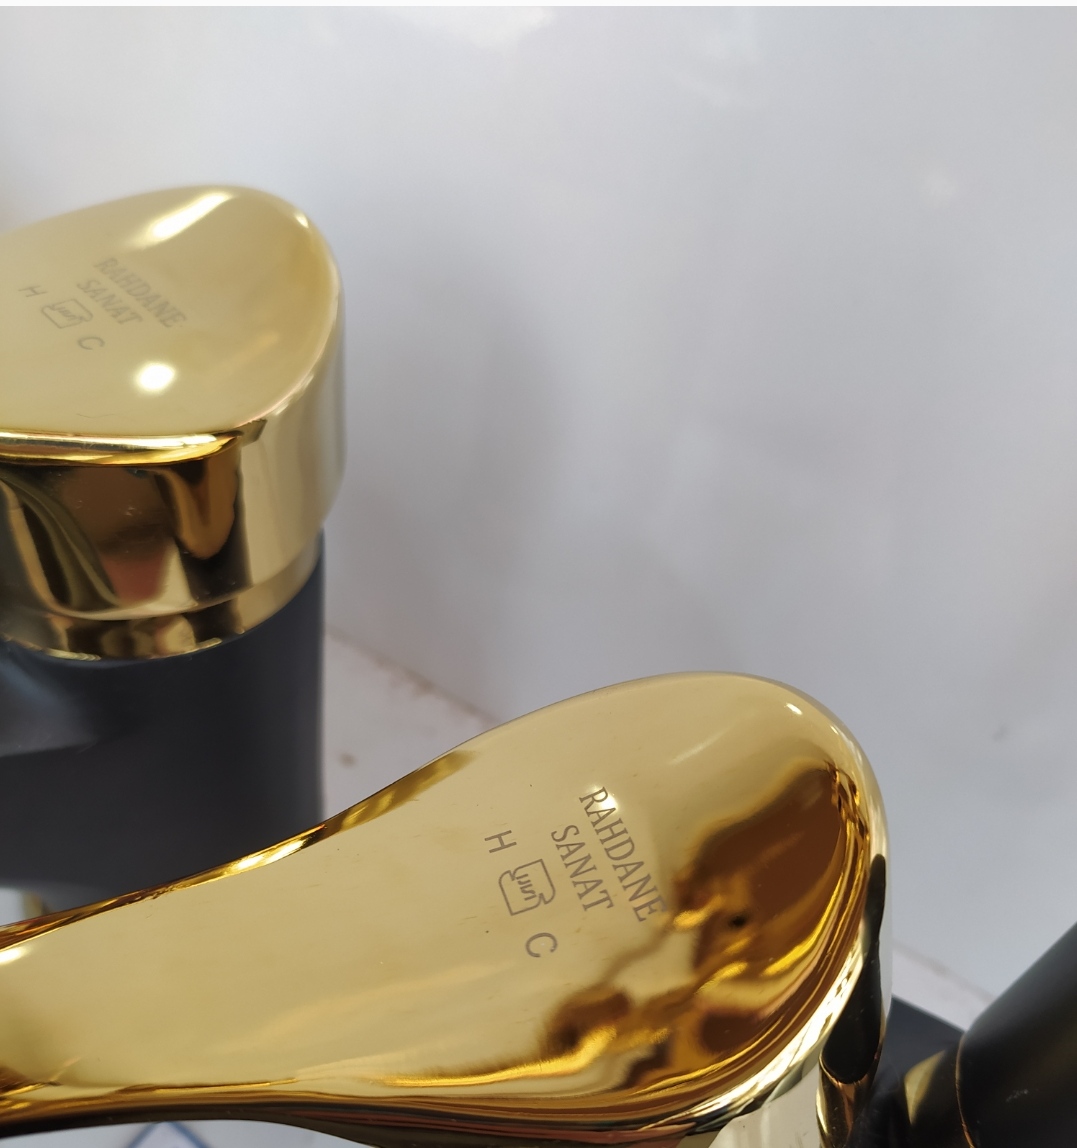 ست شیرآلات مشکی طلایی مدل لاله (ارسال رایگا)